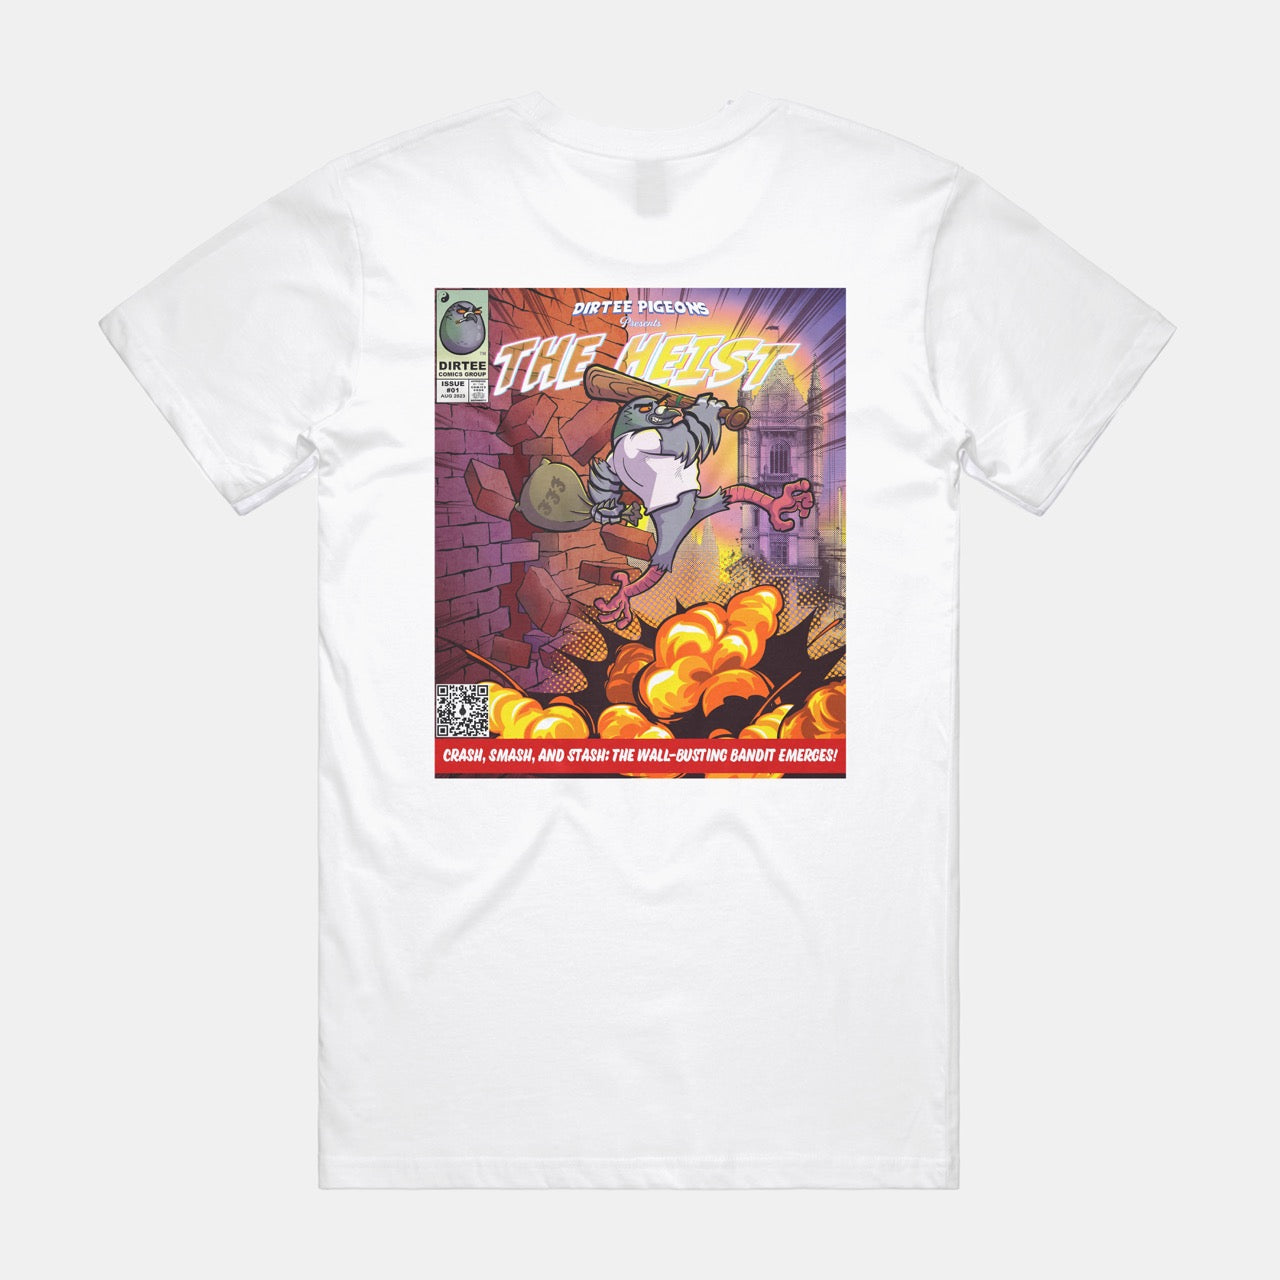 Dirtee Comics Issue 01 - The Heist - White T-shirt